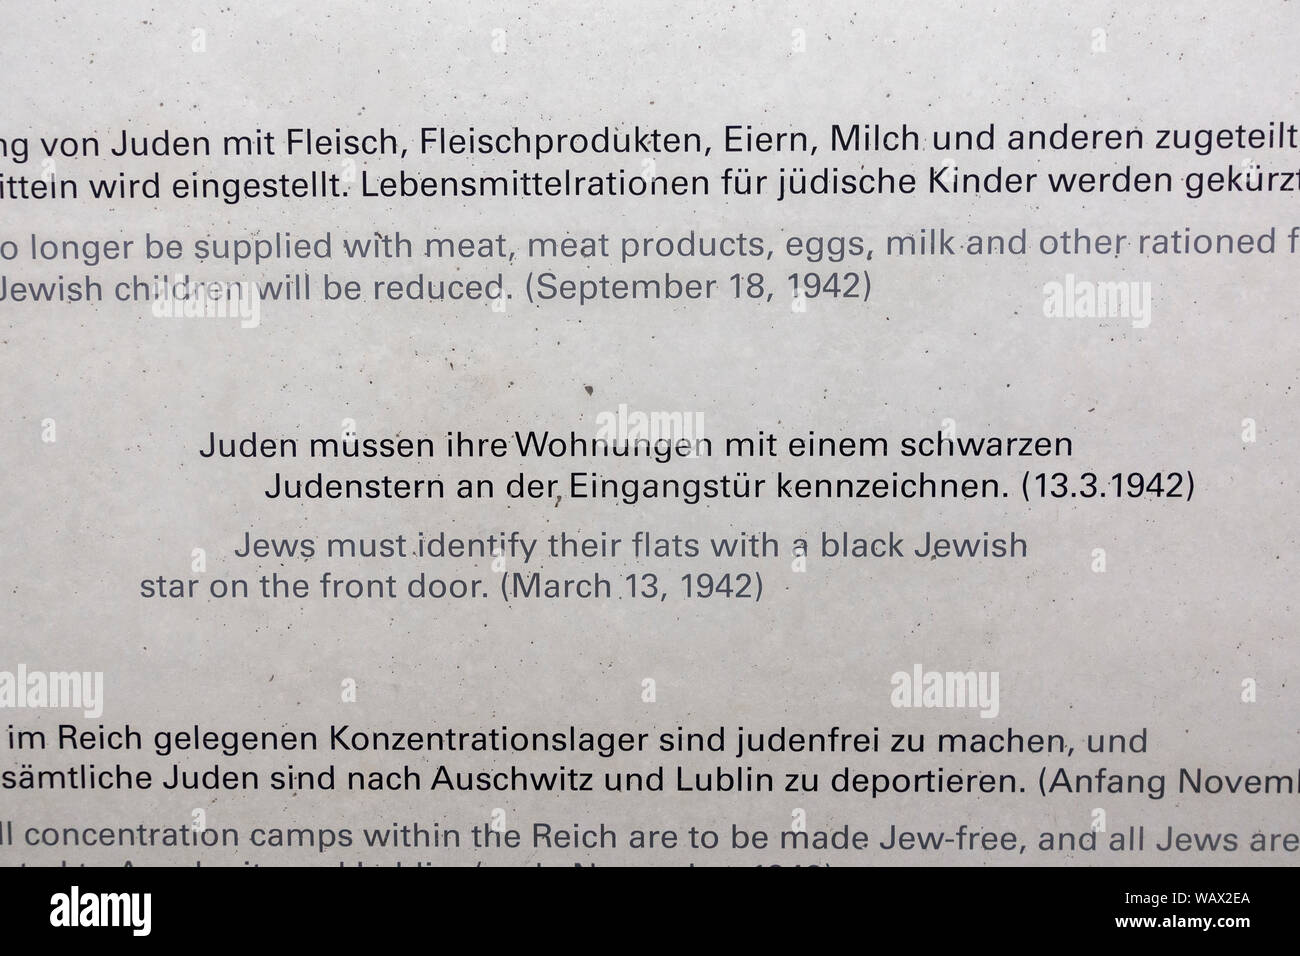 Les juifs doivent mettre étoile noire sur la porte avant, l'un des anti-nazi de la DEUXIÈME GUERRE MONDIALE L'état juif décrets, Munich, Allemagne (INFO EN NOTE). Banque D'Images